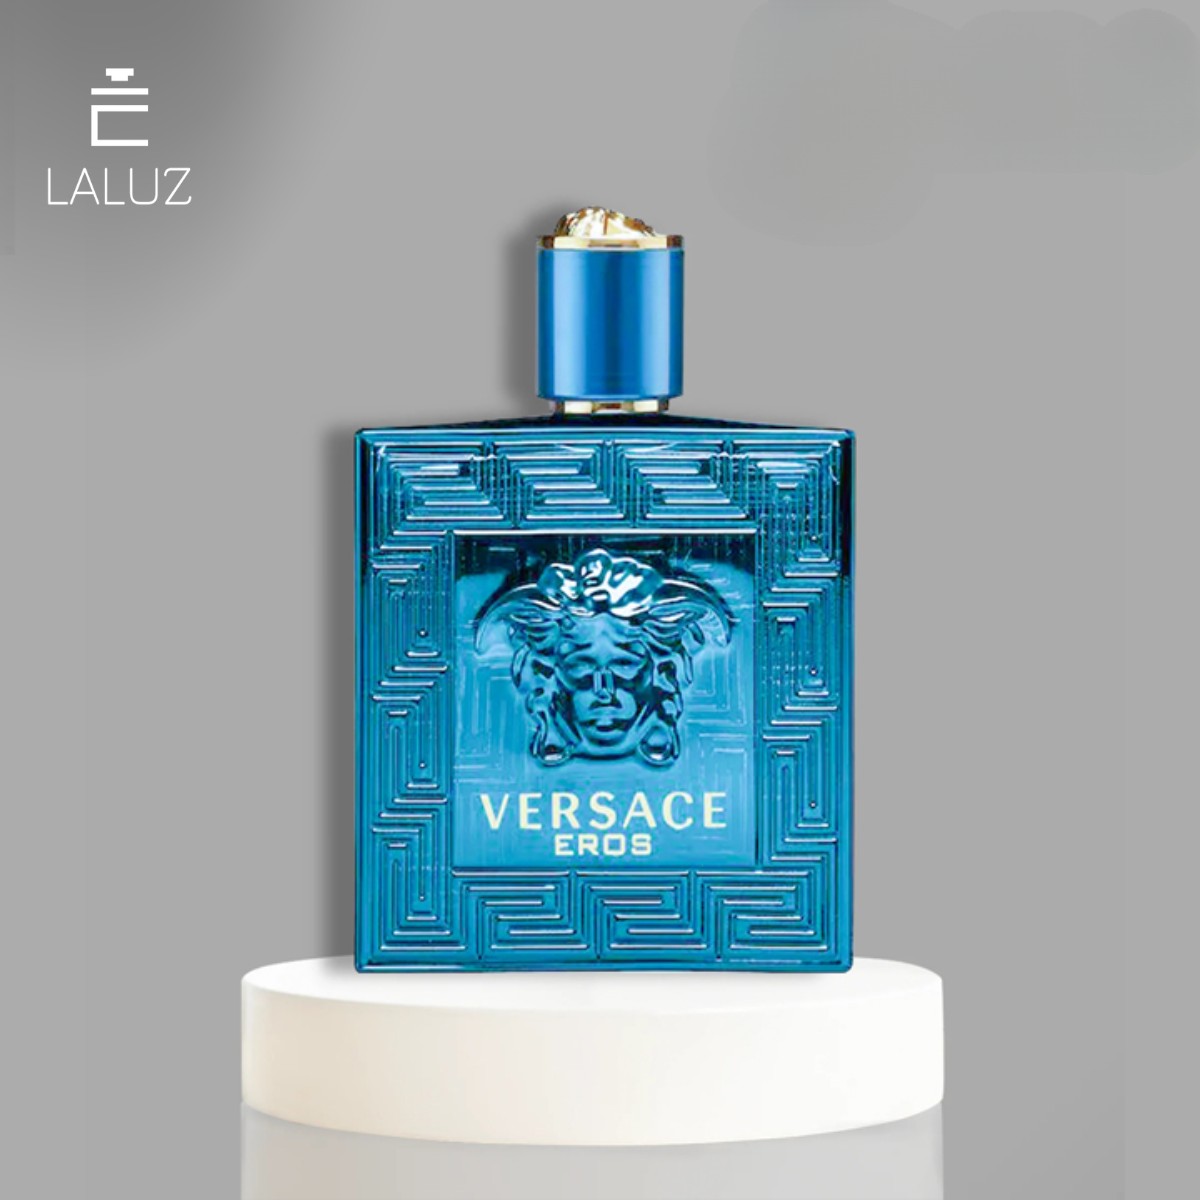 Nước hoa Versace Eros Eau De Parfum là lựa chọn hoàn hảo cho các cô gái trên 25 tuổi